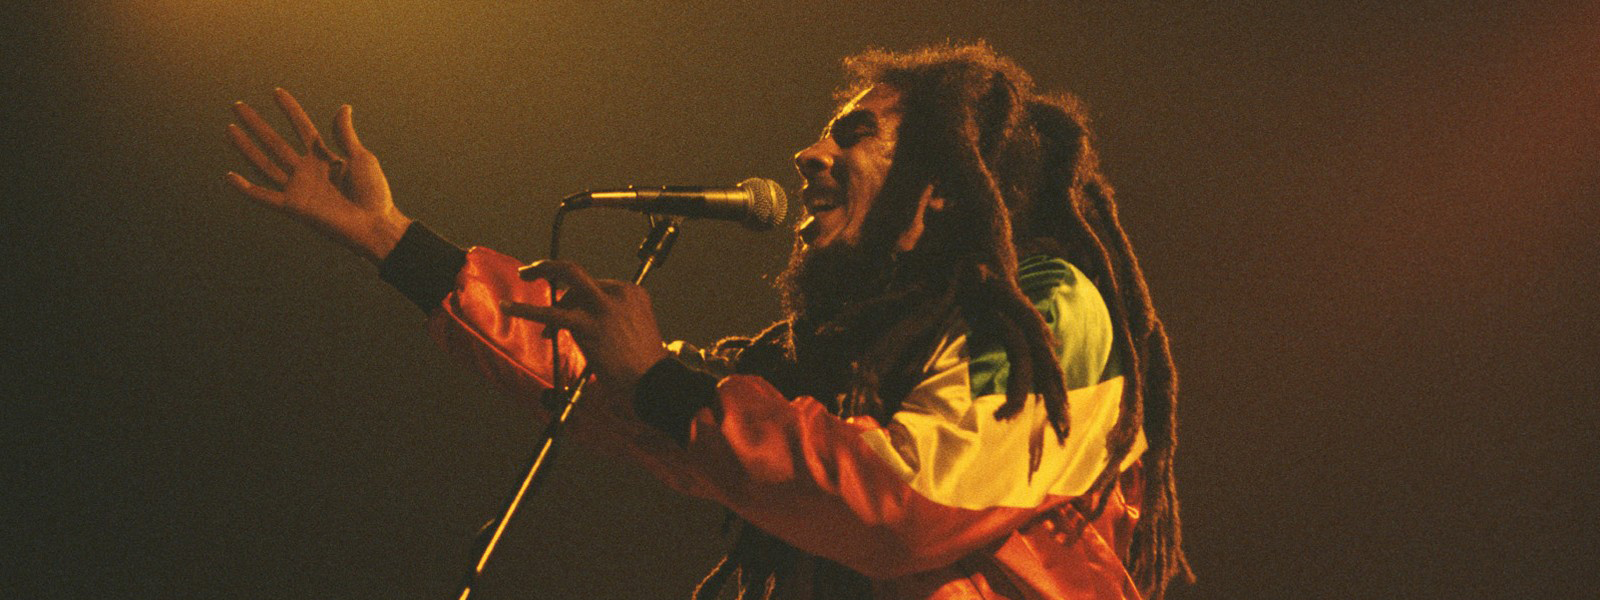 Bob Marley – Legend